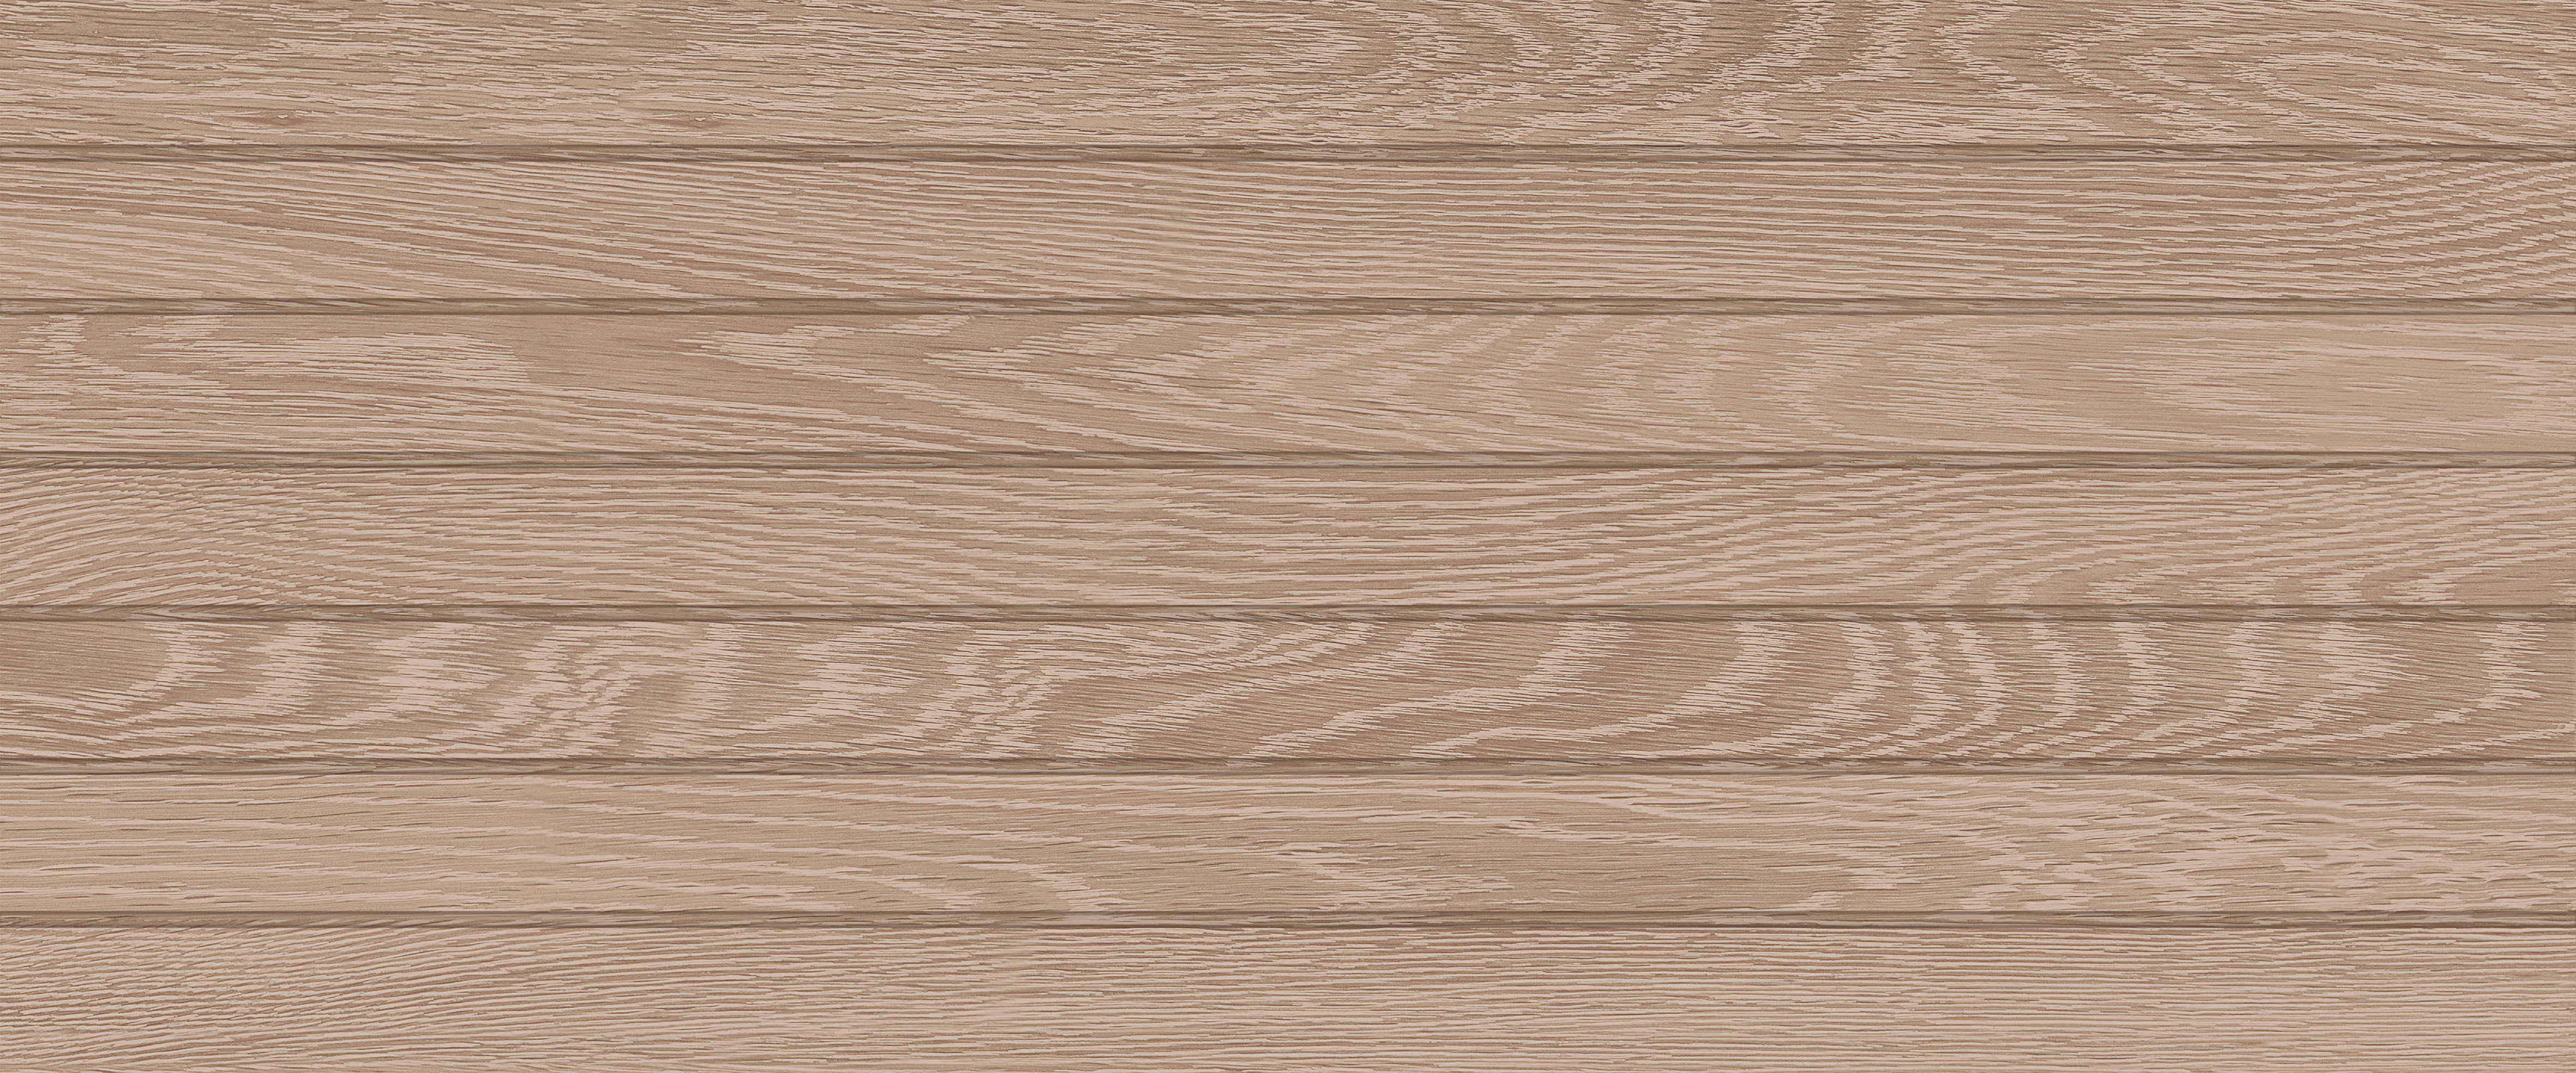 Настенная плитка Global Tile Eco Wood Бежевый 04 25x60